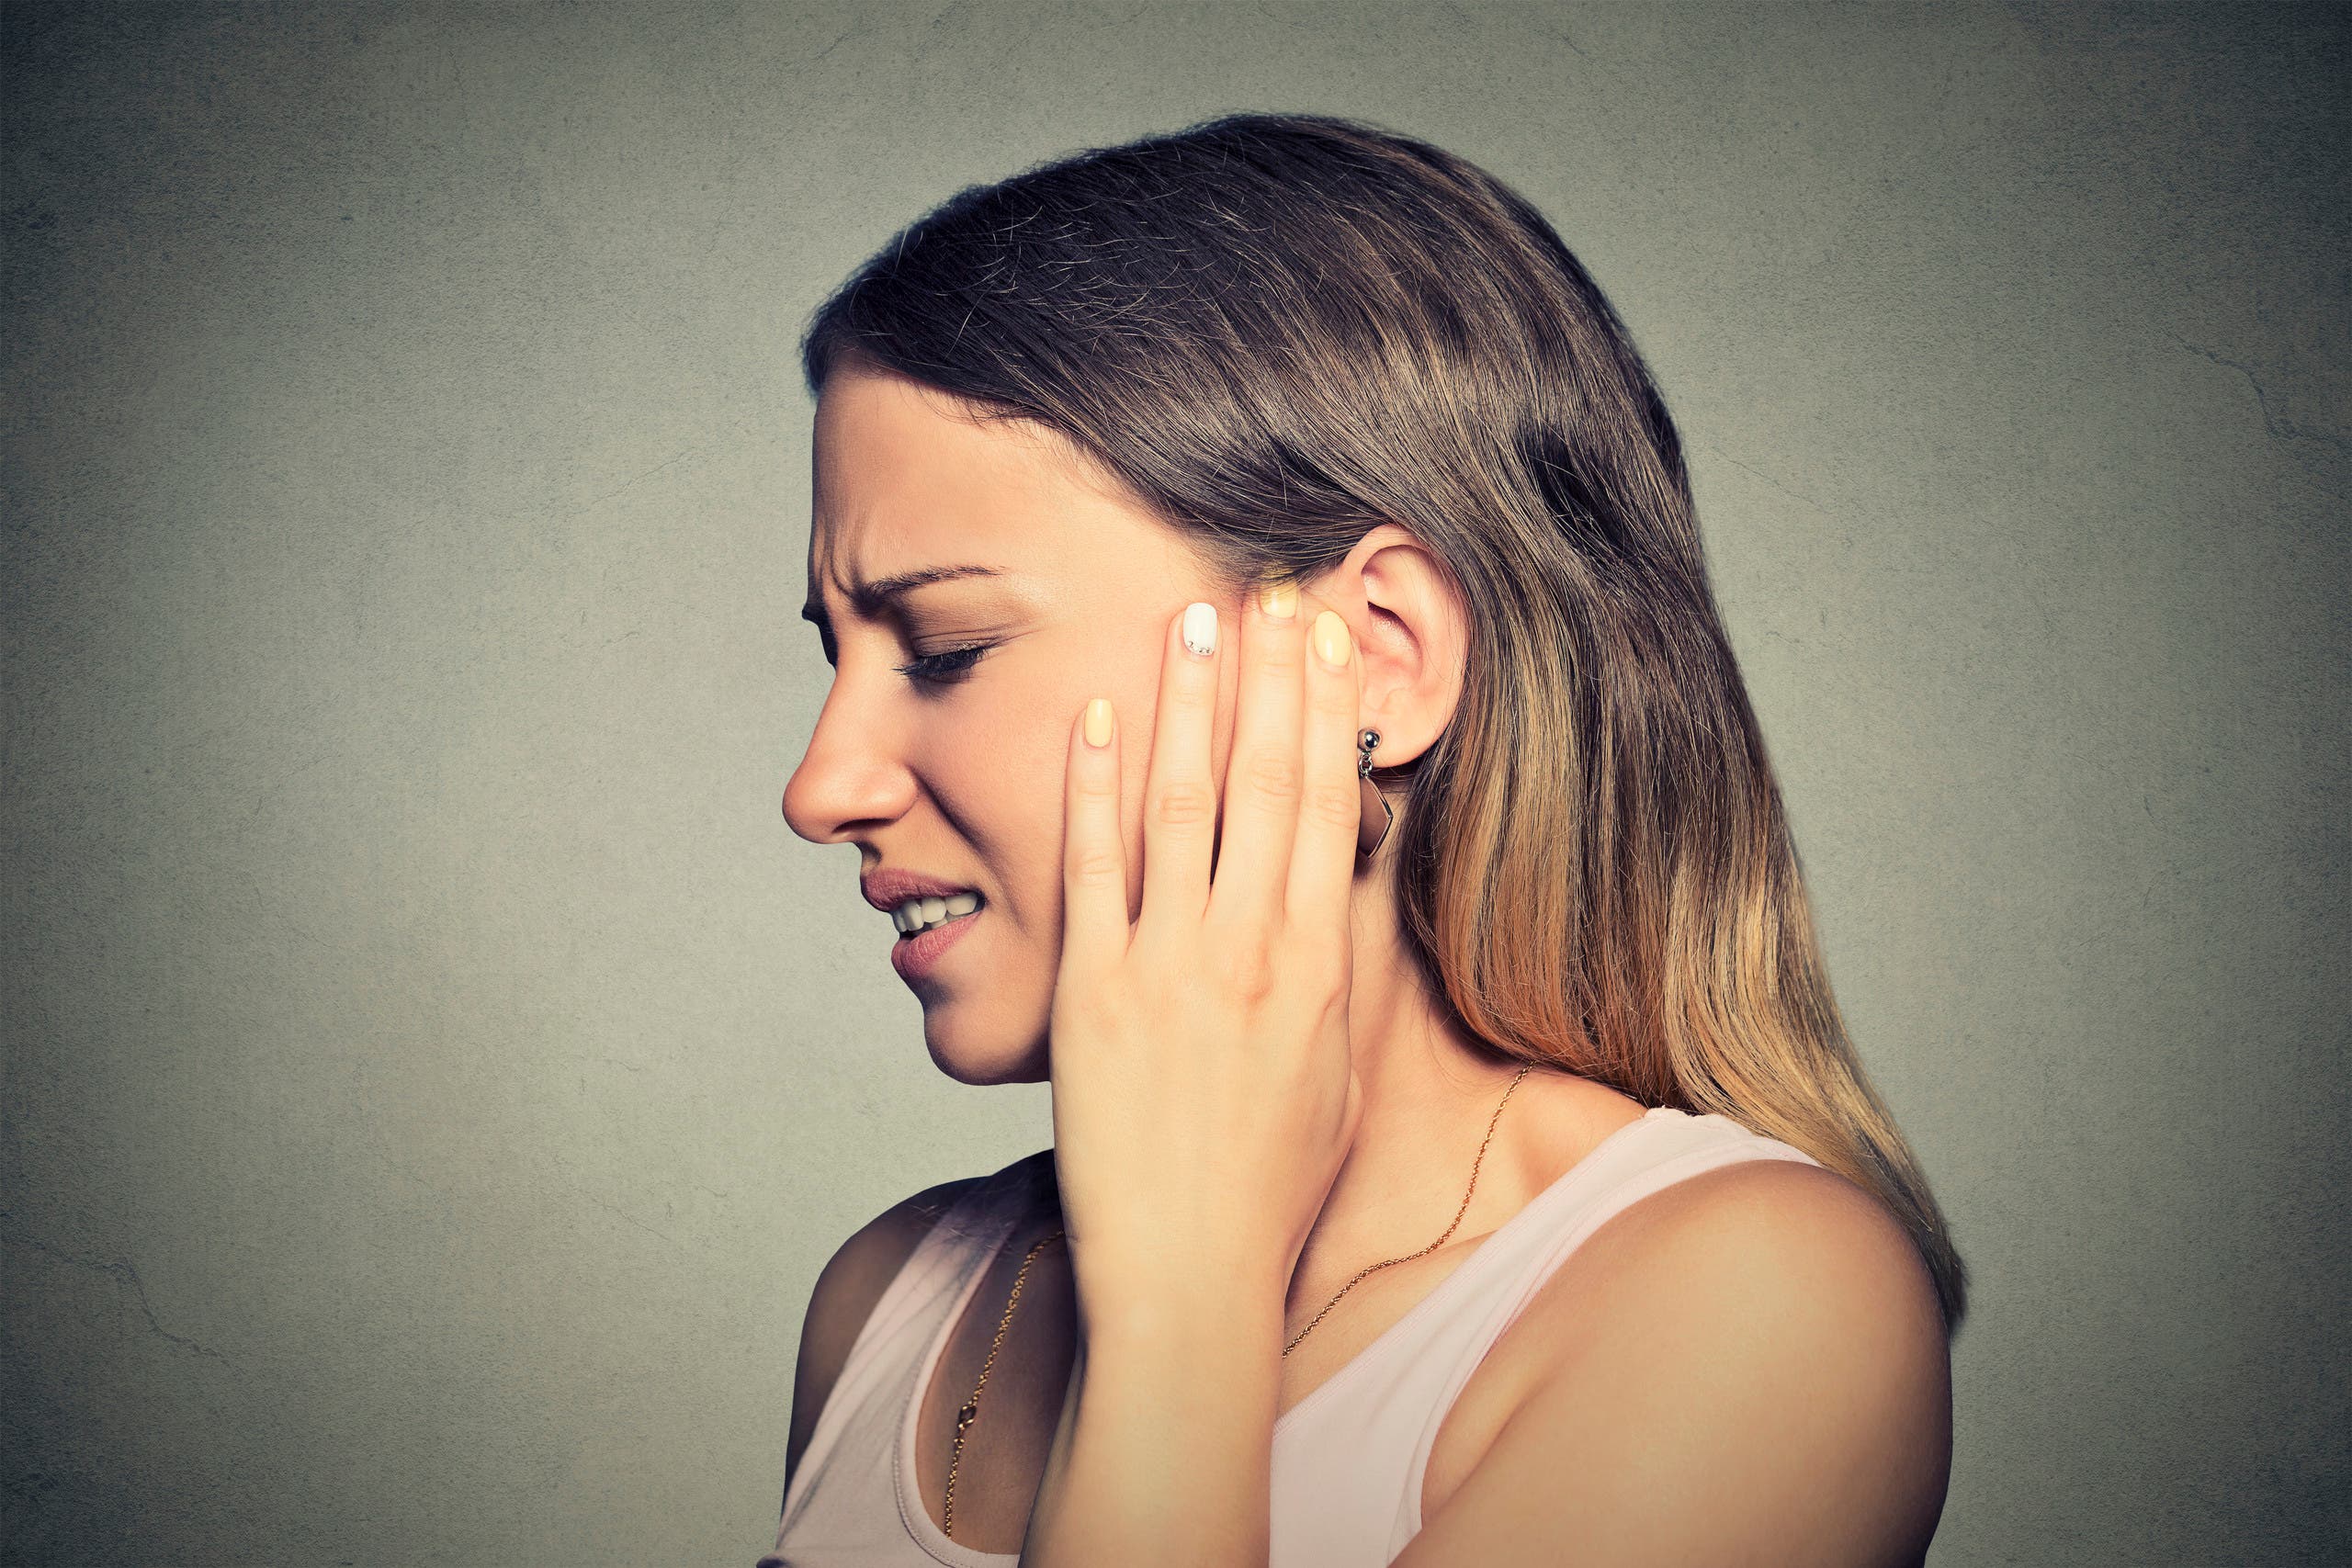 كيف تحمي أذنك من فقدان السمع؟ B8debca2-1b0a-4e74-89bd-756a36cf98bf